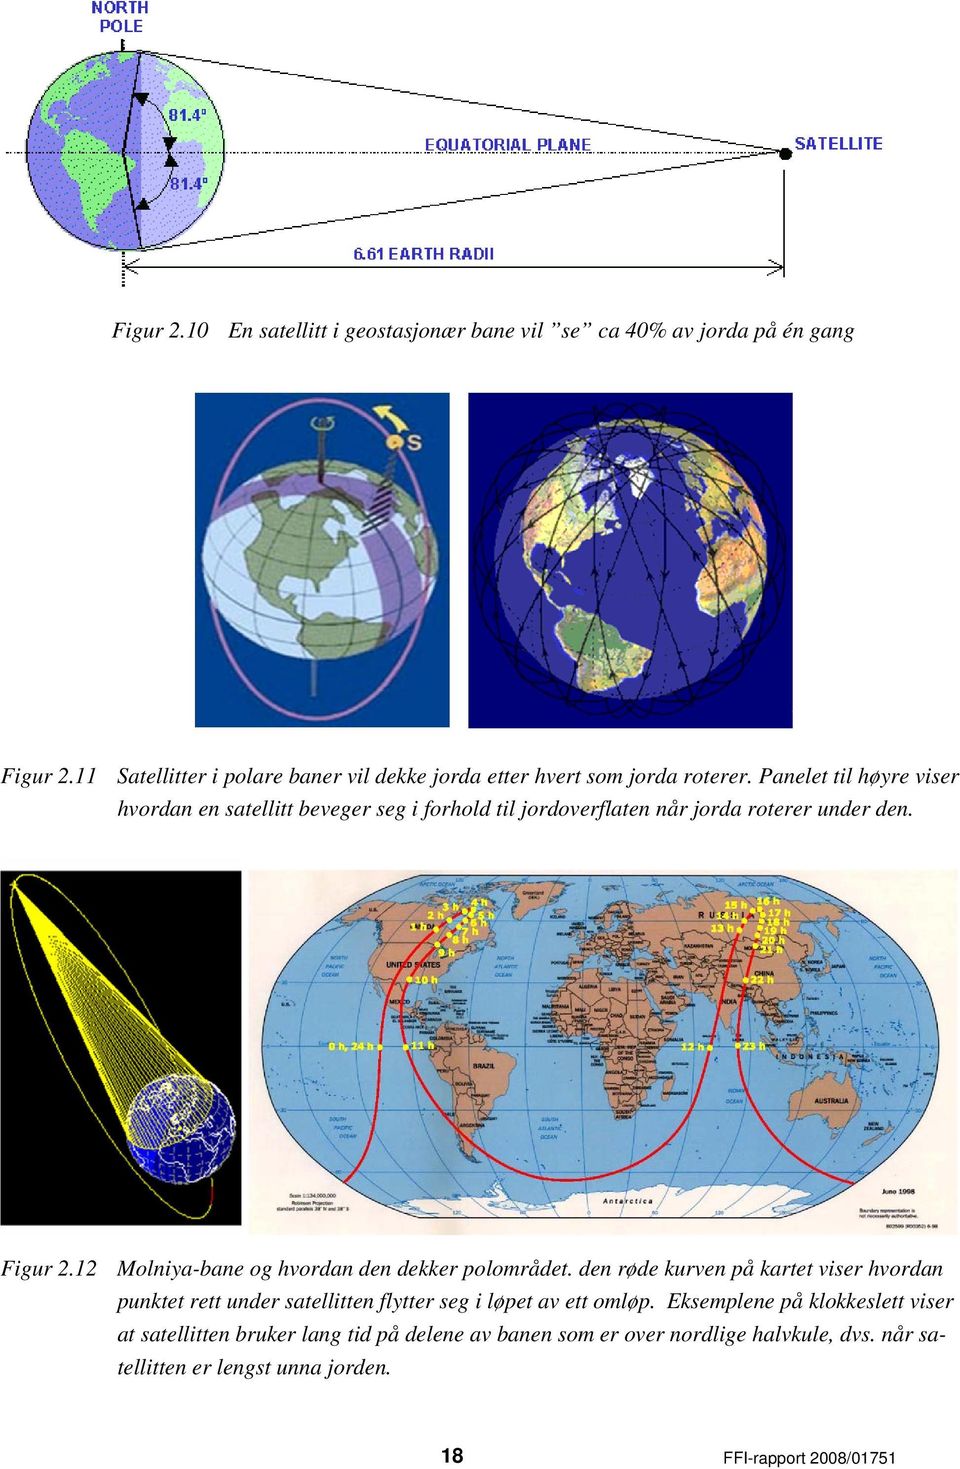 Panelet til høyre viser hvordan en satellitt beveger seg i forhold til jordoverflaten når jorda roterer under den. Figur 2.